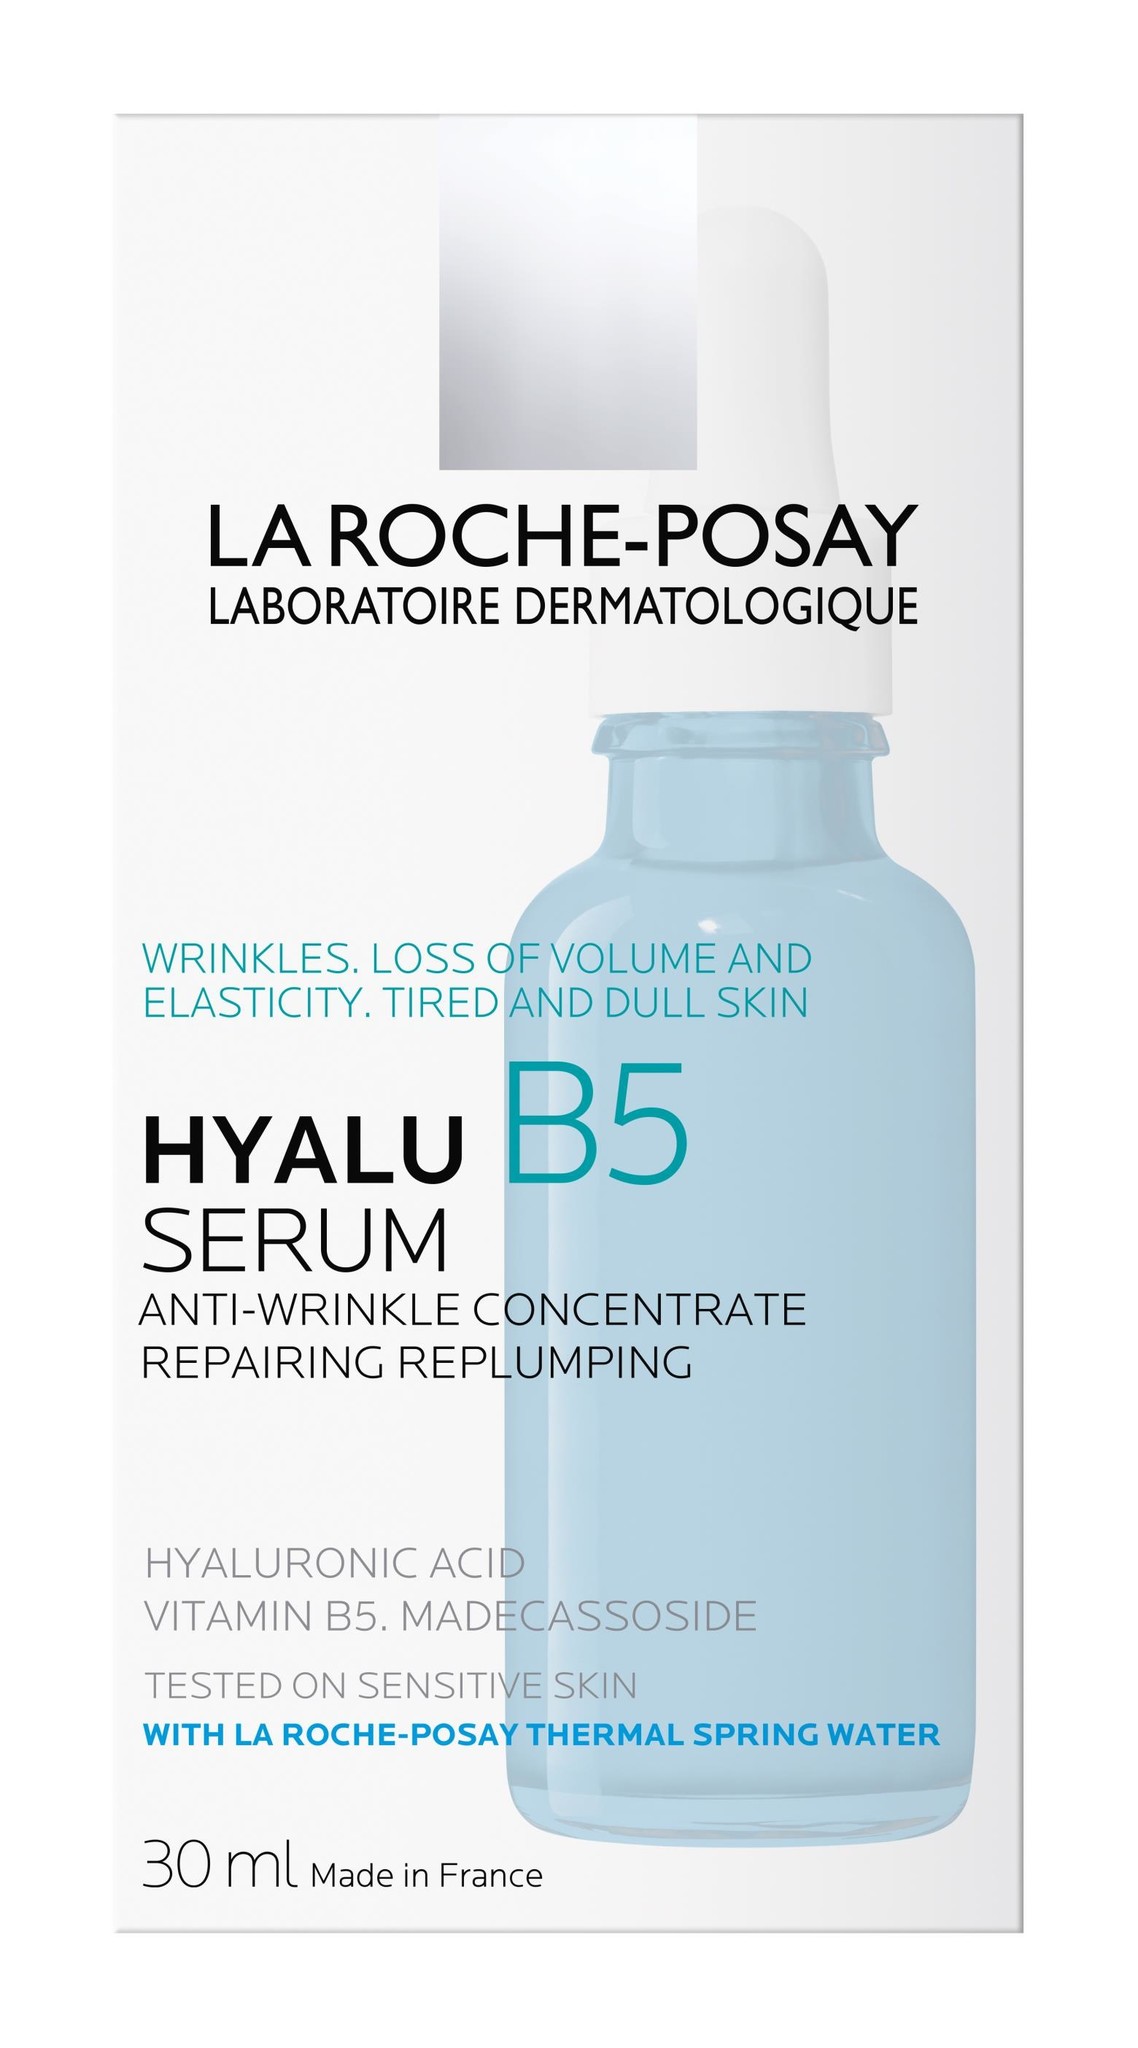 La Roche-Posay Hyalu B5 Serum